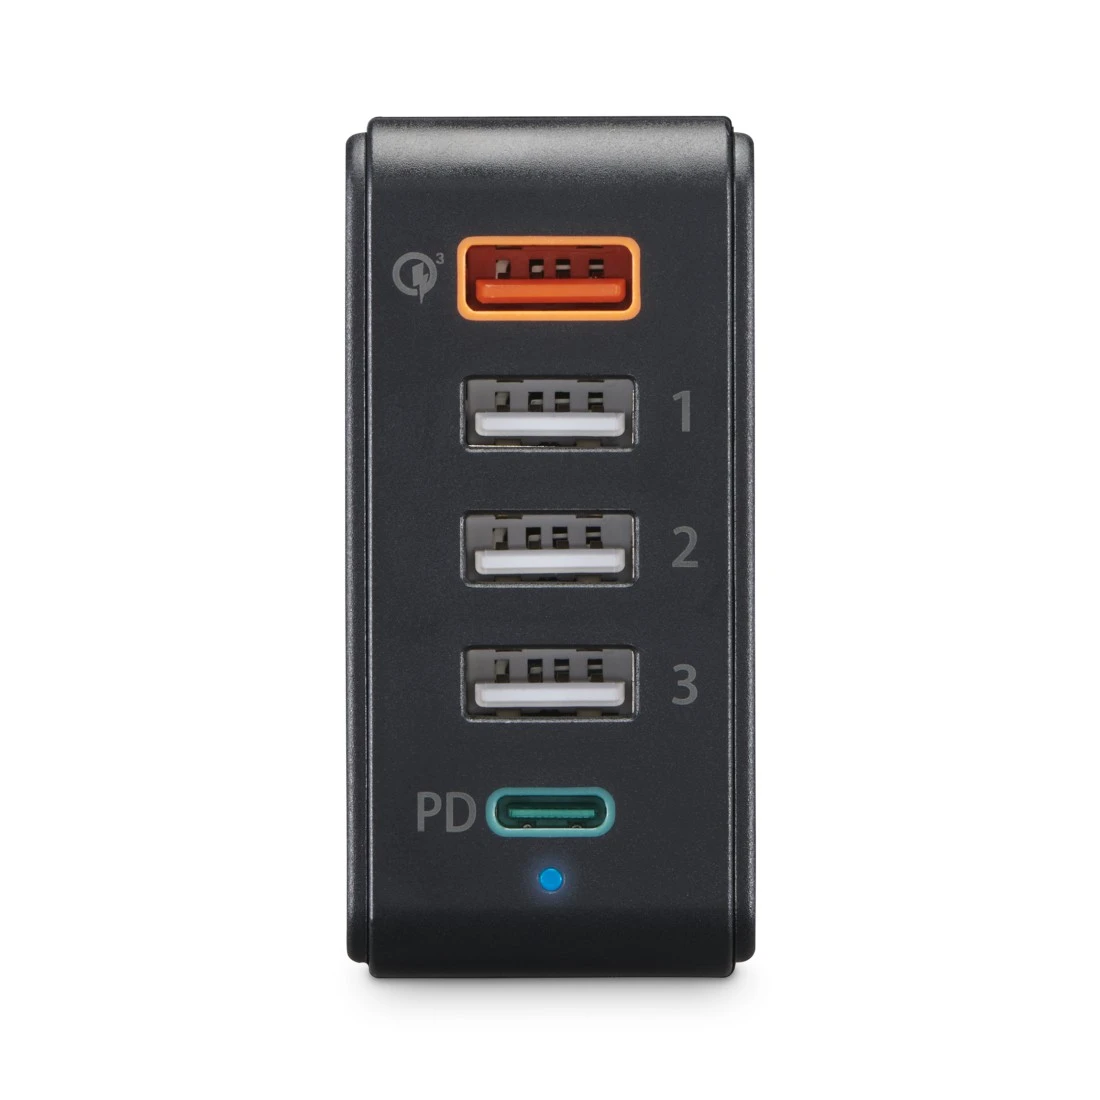 5 usb multi-port usb plug charger chargeur de bureau hub adaptateur secteur